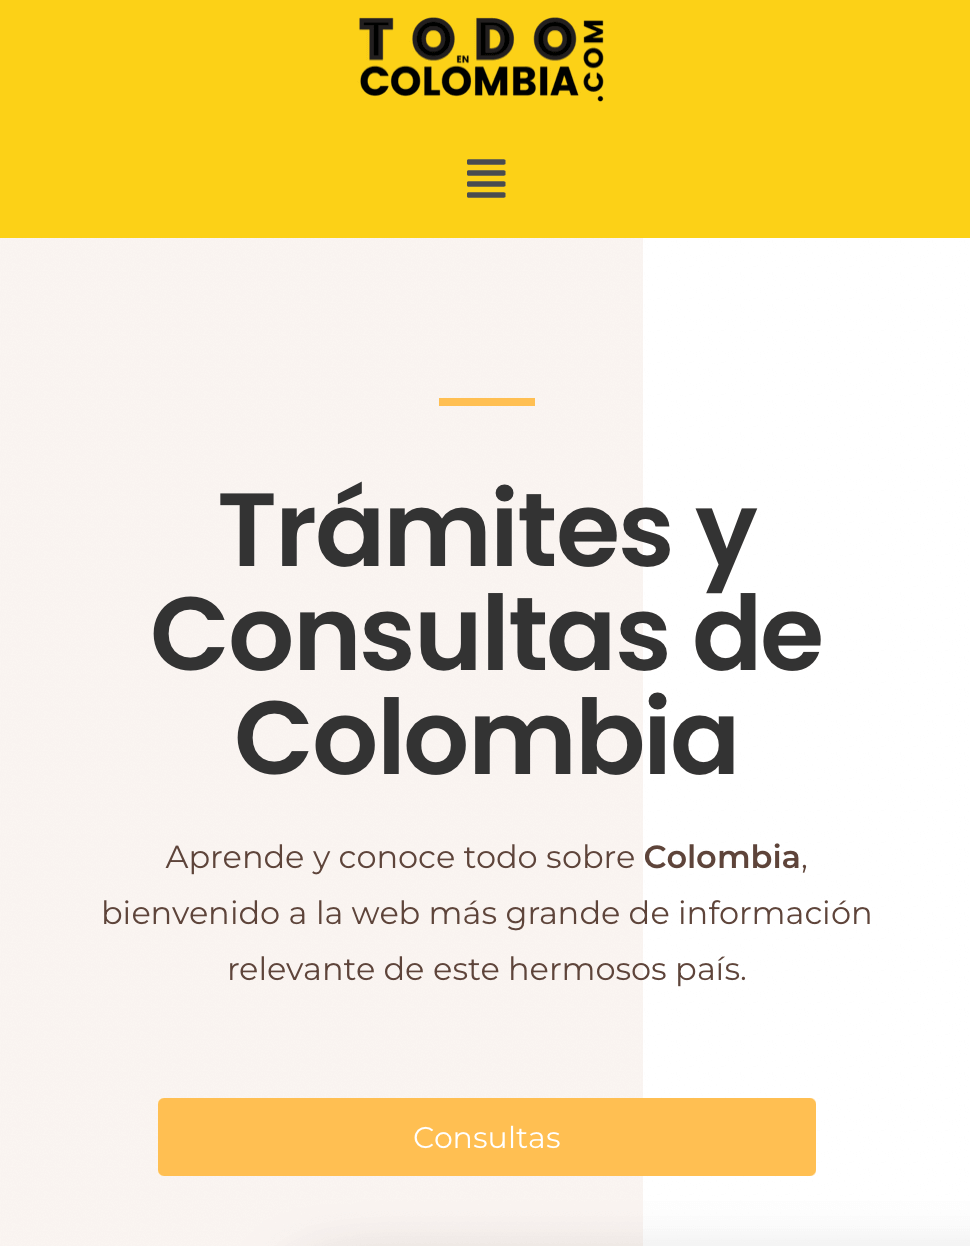 Todo En Colombia Web